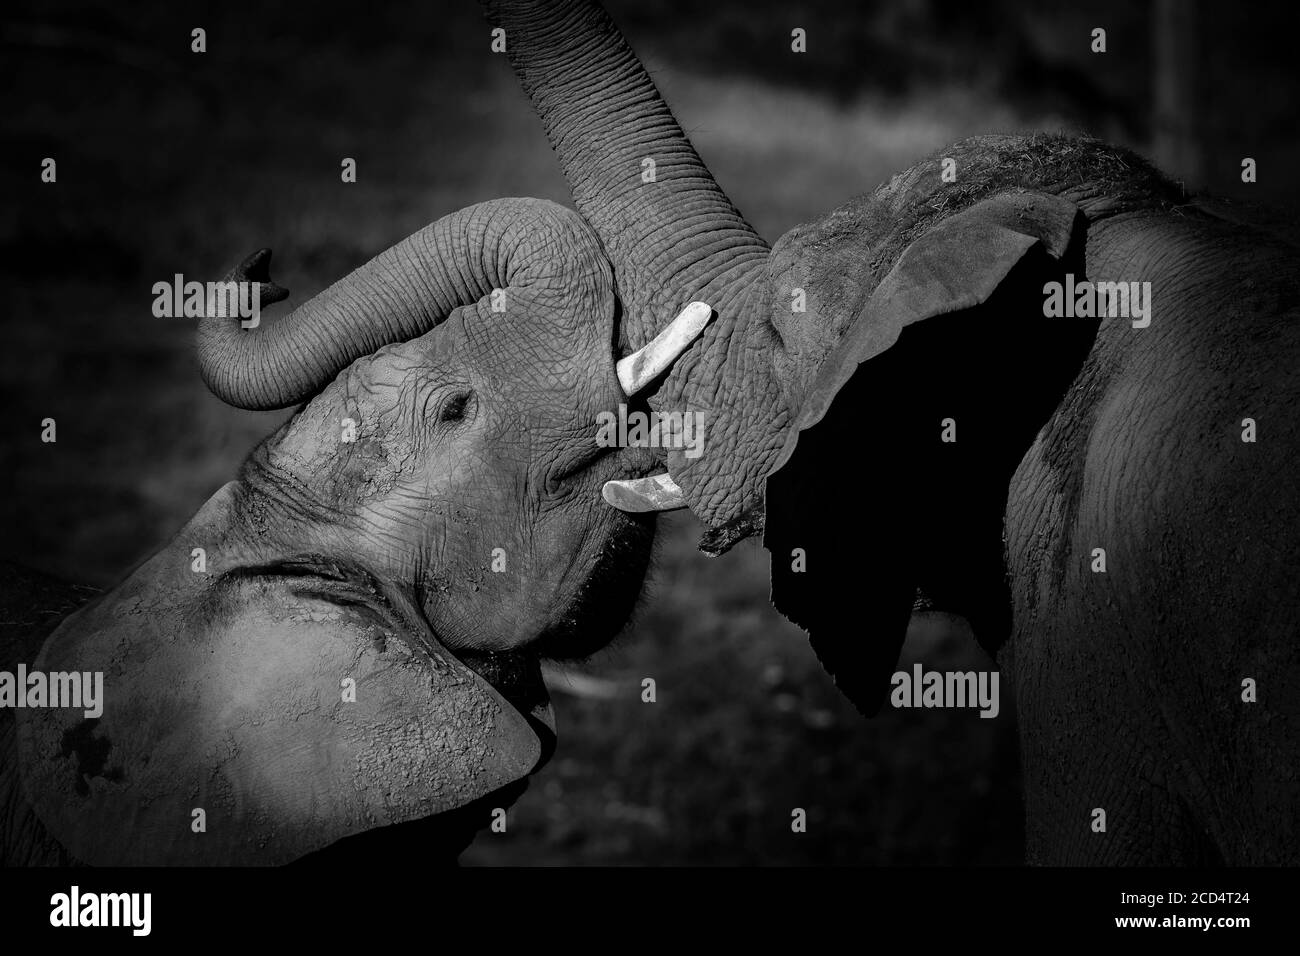 Monochrom Nahaufnahme von afrikanischen Elefanten (Loxodonta africana) Mutter und jungen männlichen Bindung, zeigt Zuneigung, im Freien West Midland Safari Park, Großbritannien. Stockfoto